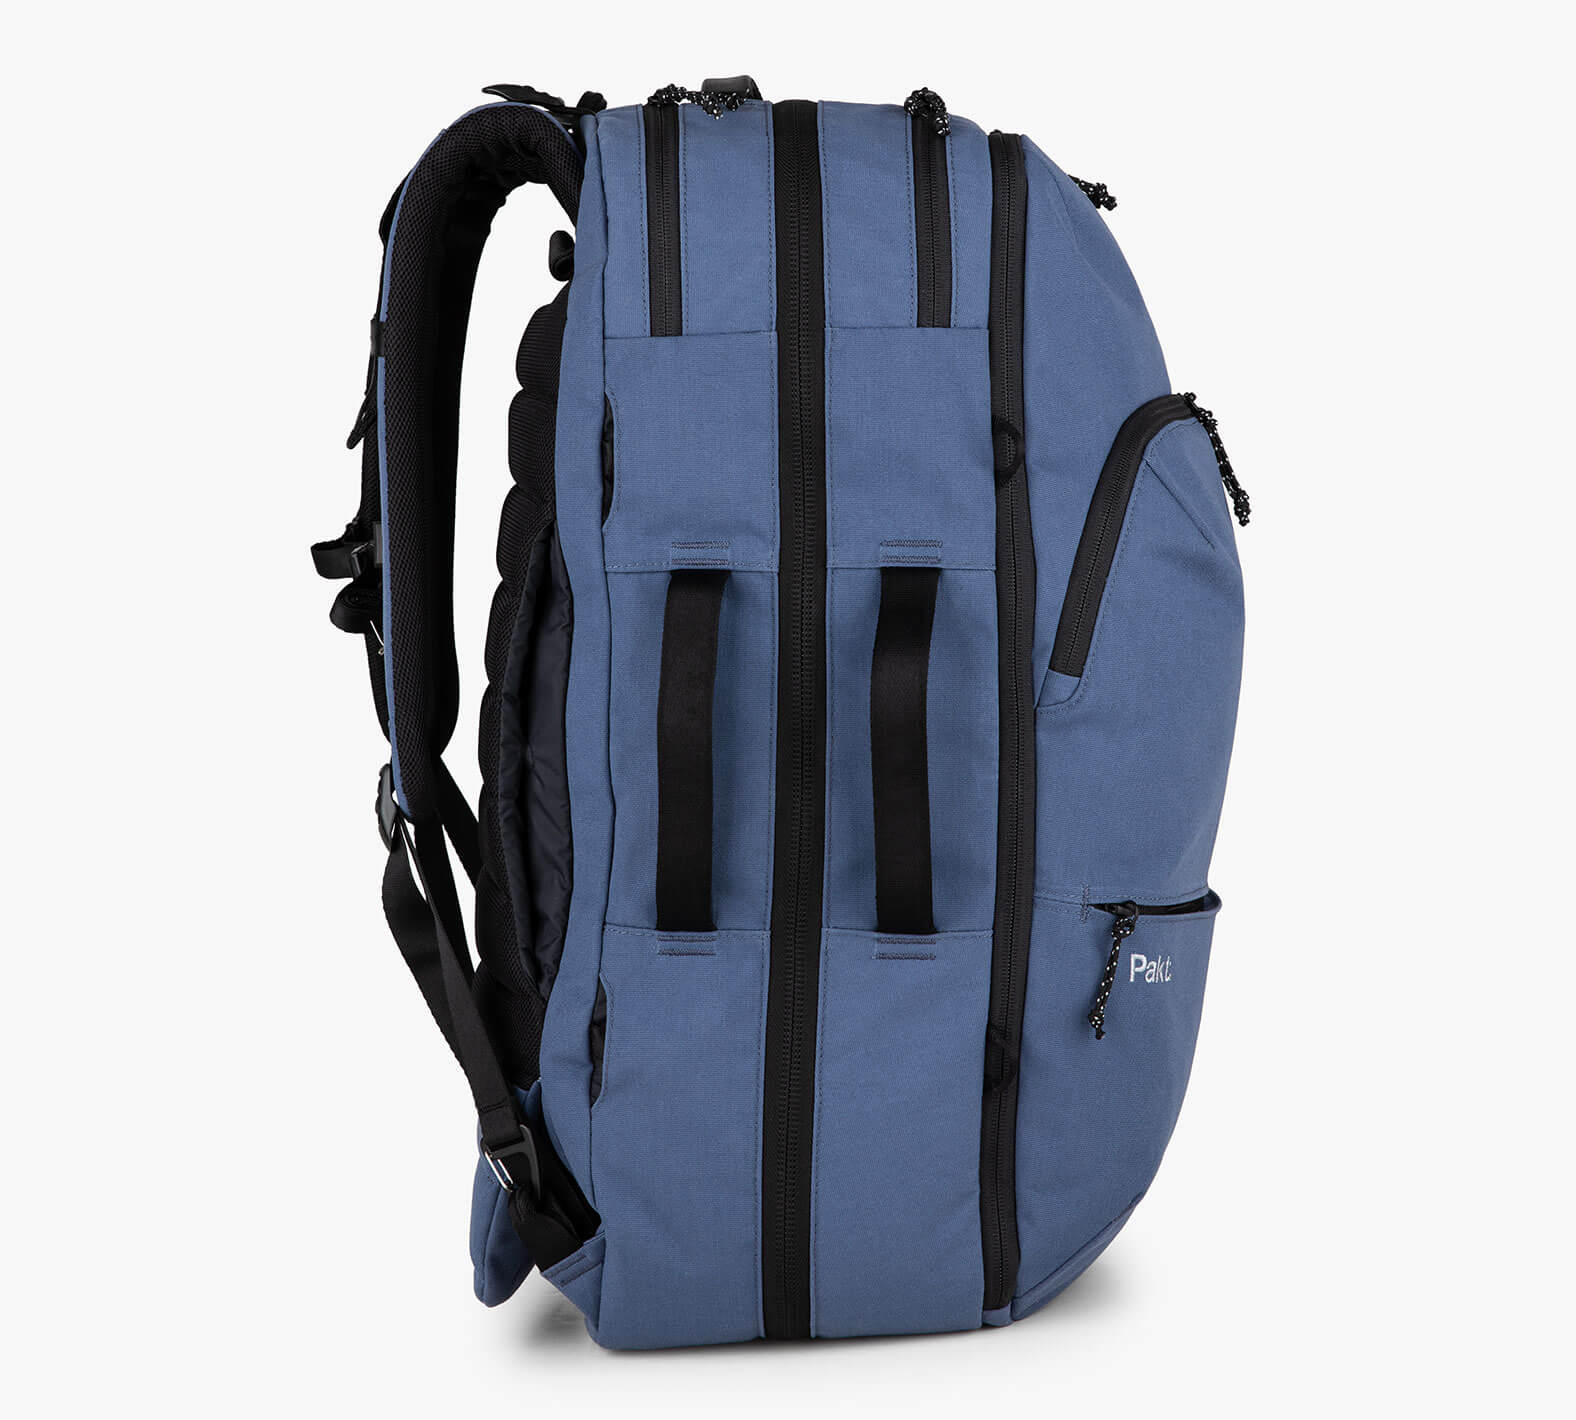 Blue travel backpack